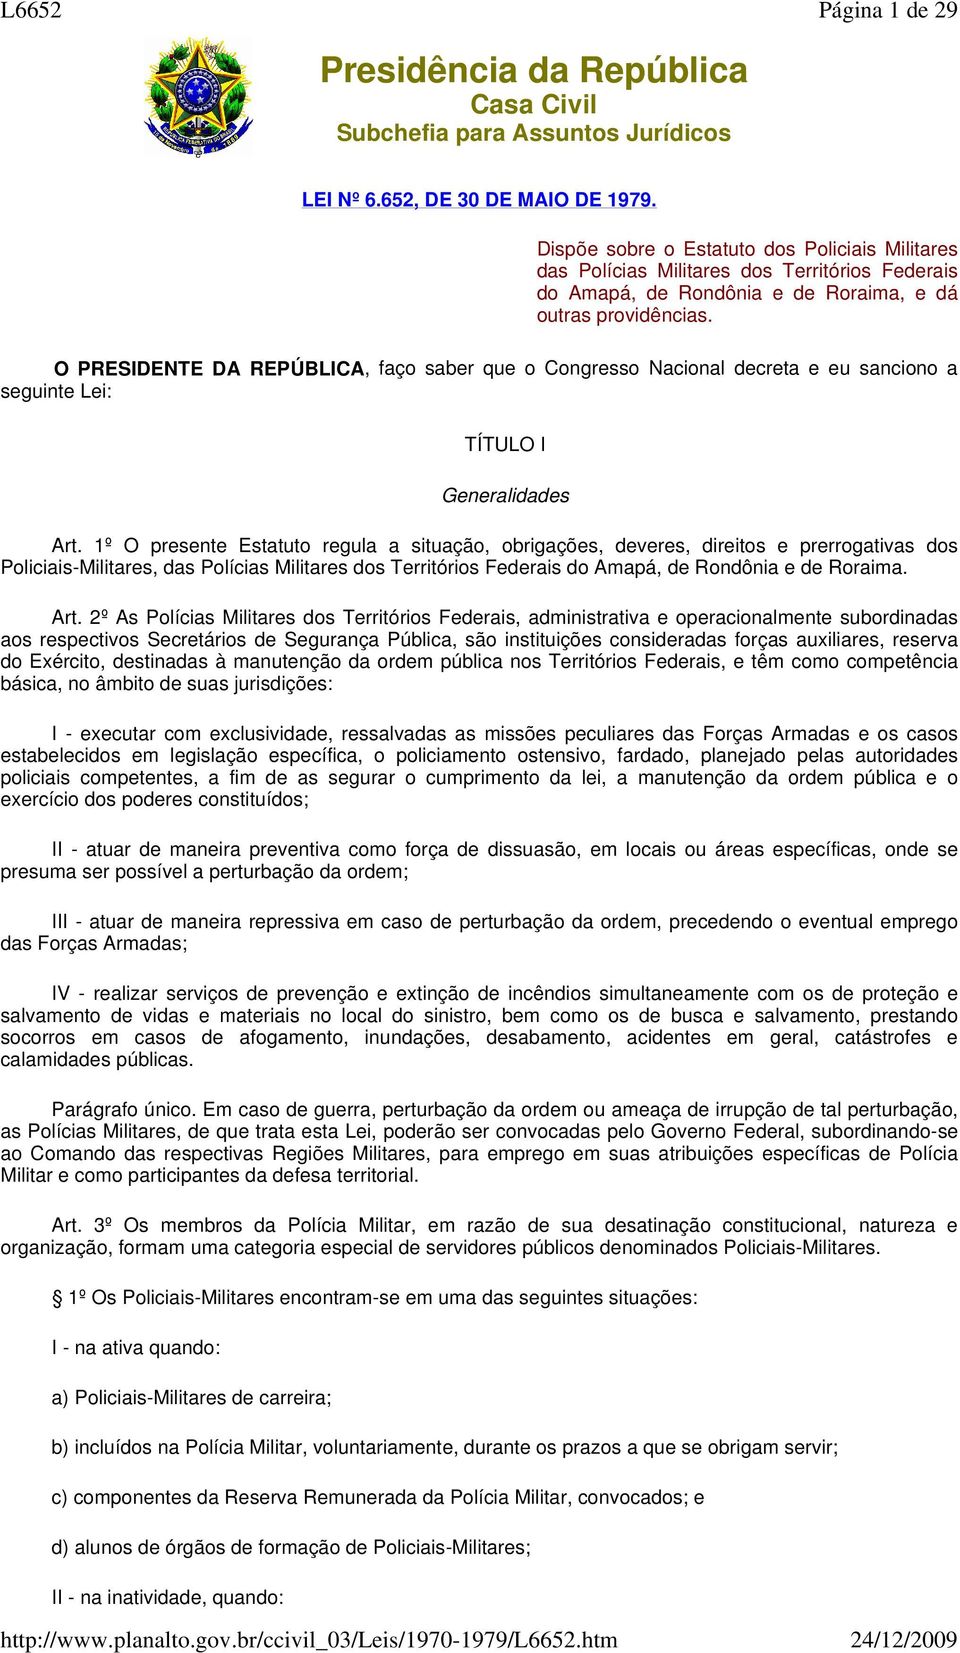 1º O presente Estatuto regula a situação, obrigações, deveres, direitos e prerrogativas dos Policiais-Militares, das Polícias Militares dos Territórios Federais do Amapá, de Rondônia e de Roraima.